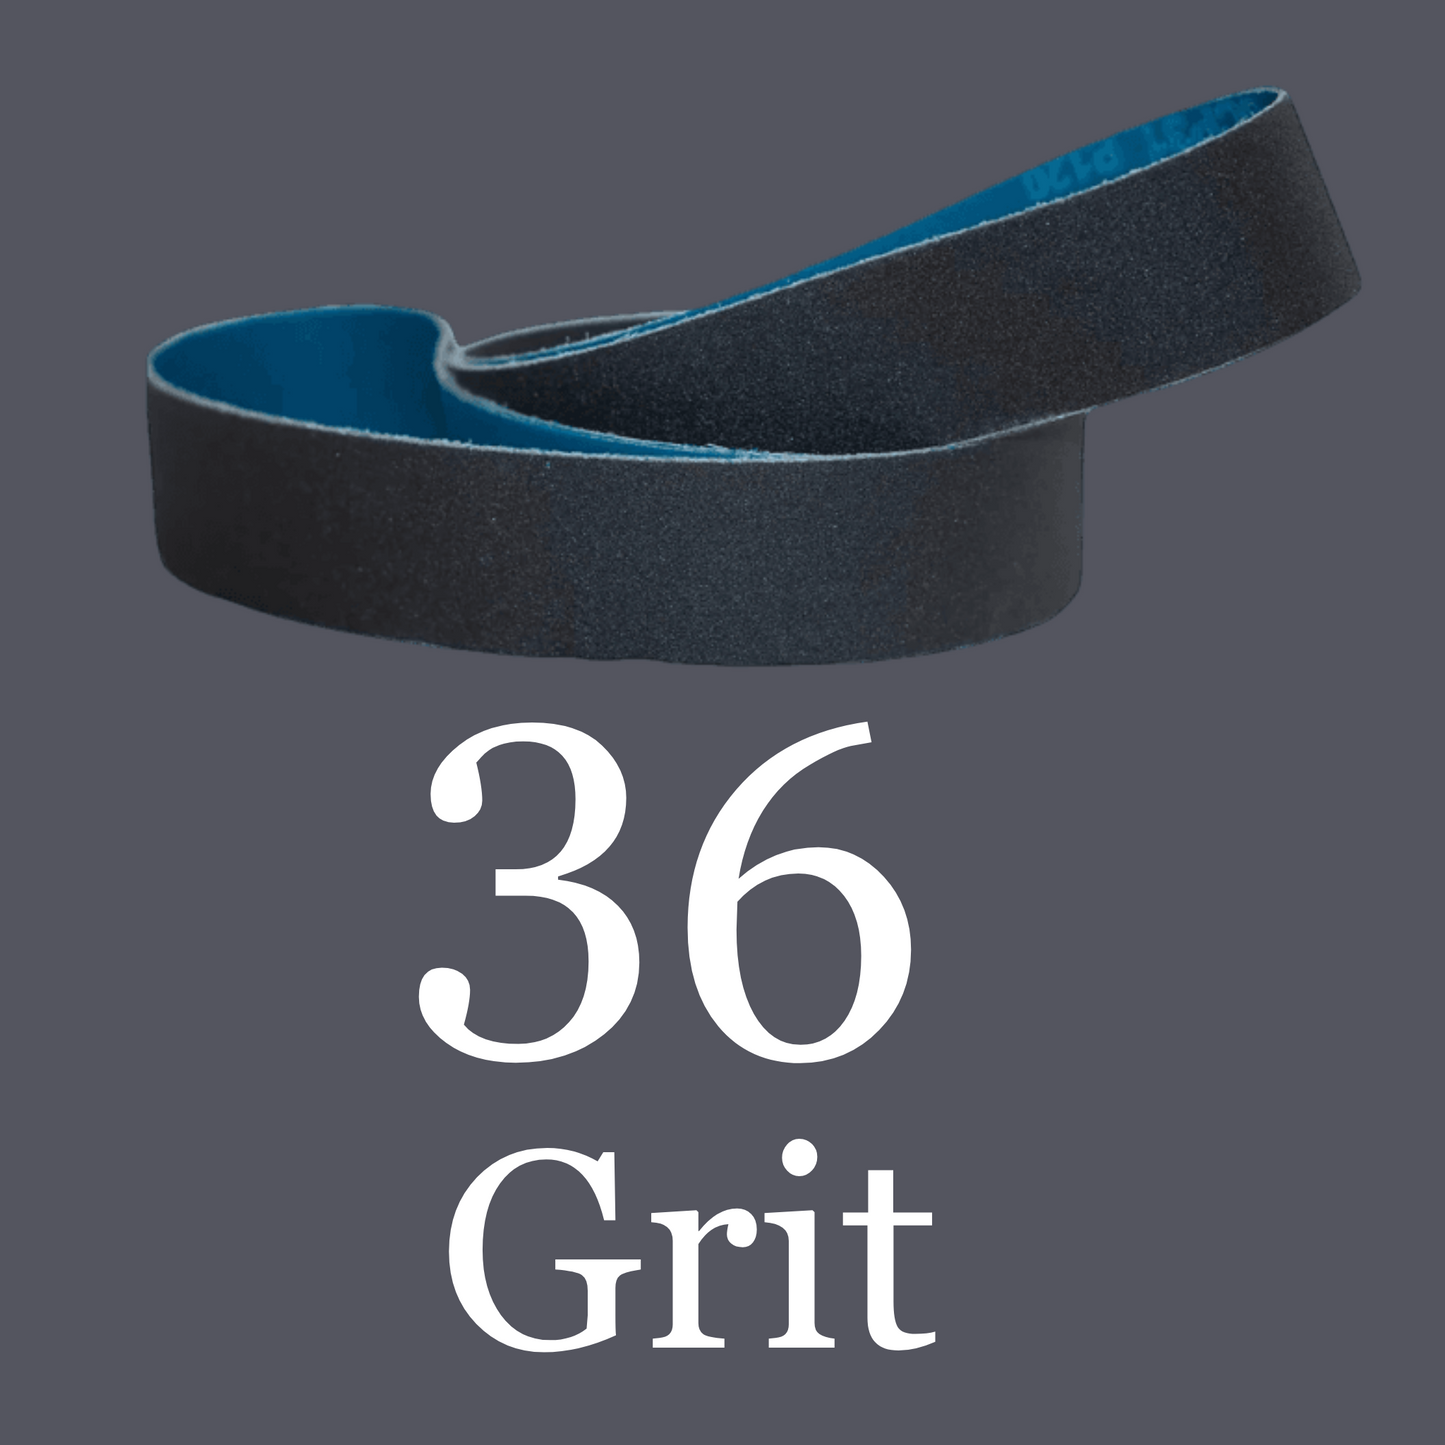 2” x 72” Premium Black Silicon Carbide “Y” Belts 36 Grit